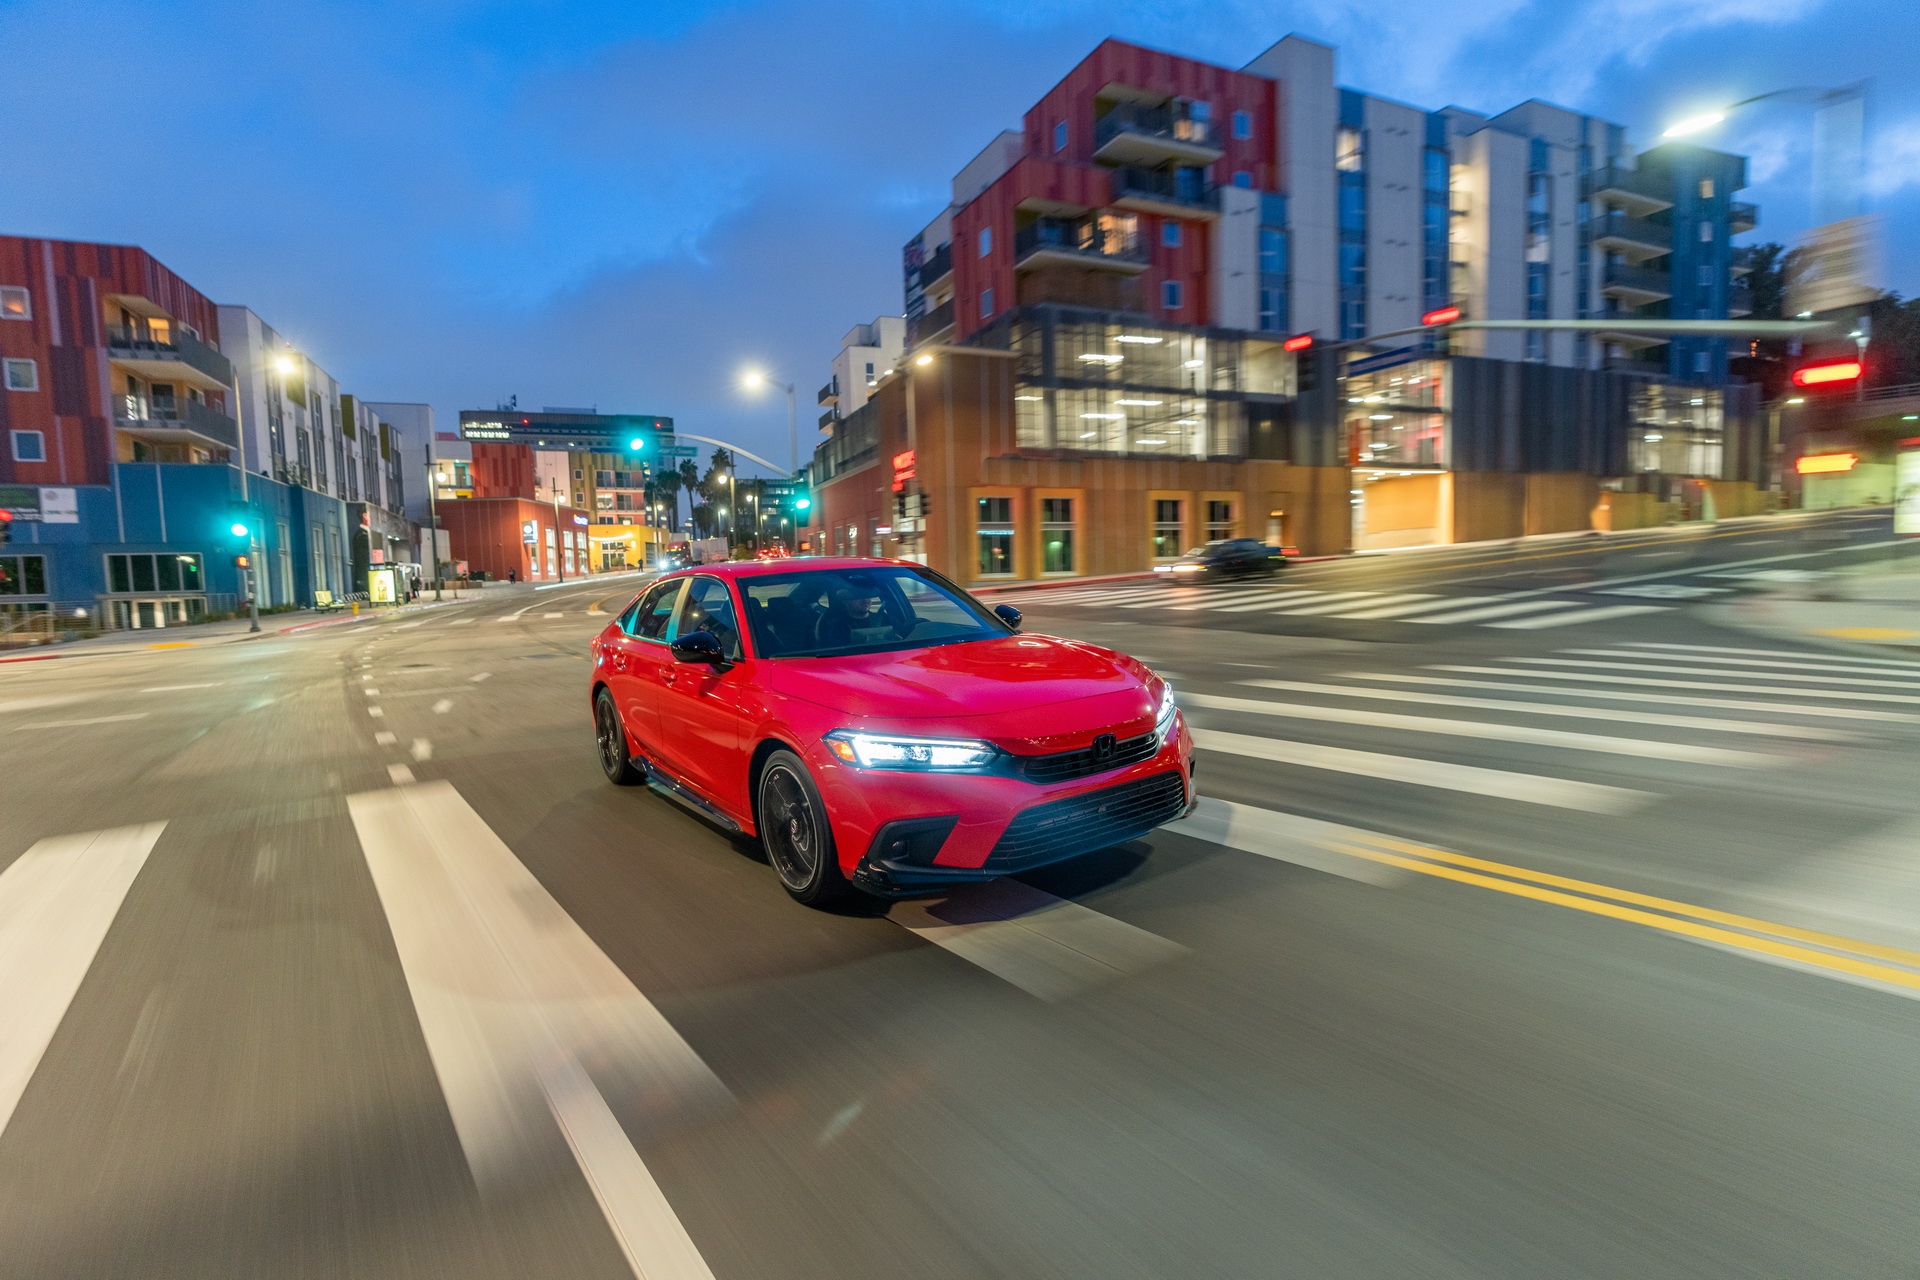 Yeni 2022 Honda Civic Sedan'ın yurt dışı fiyatları ve detaylı fotoğraflarına göz atın